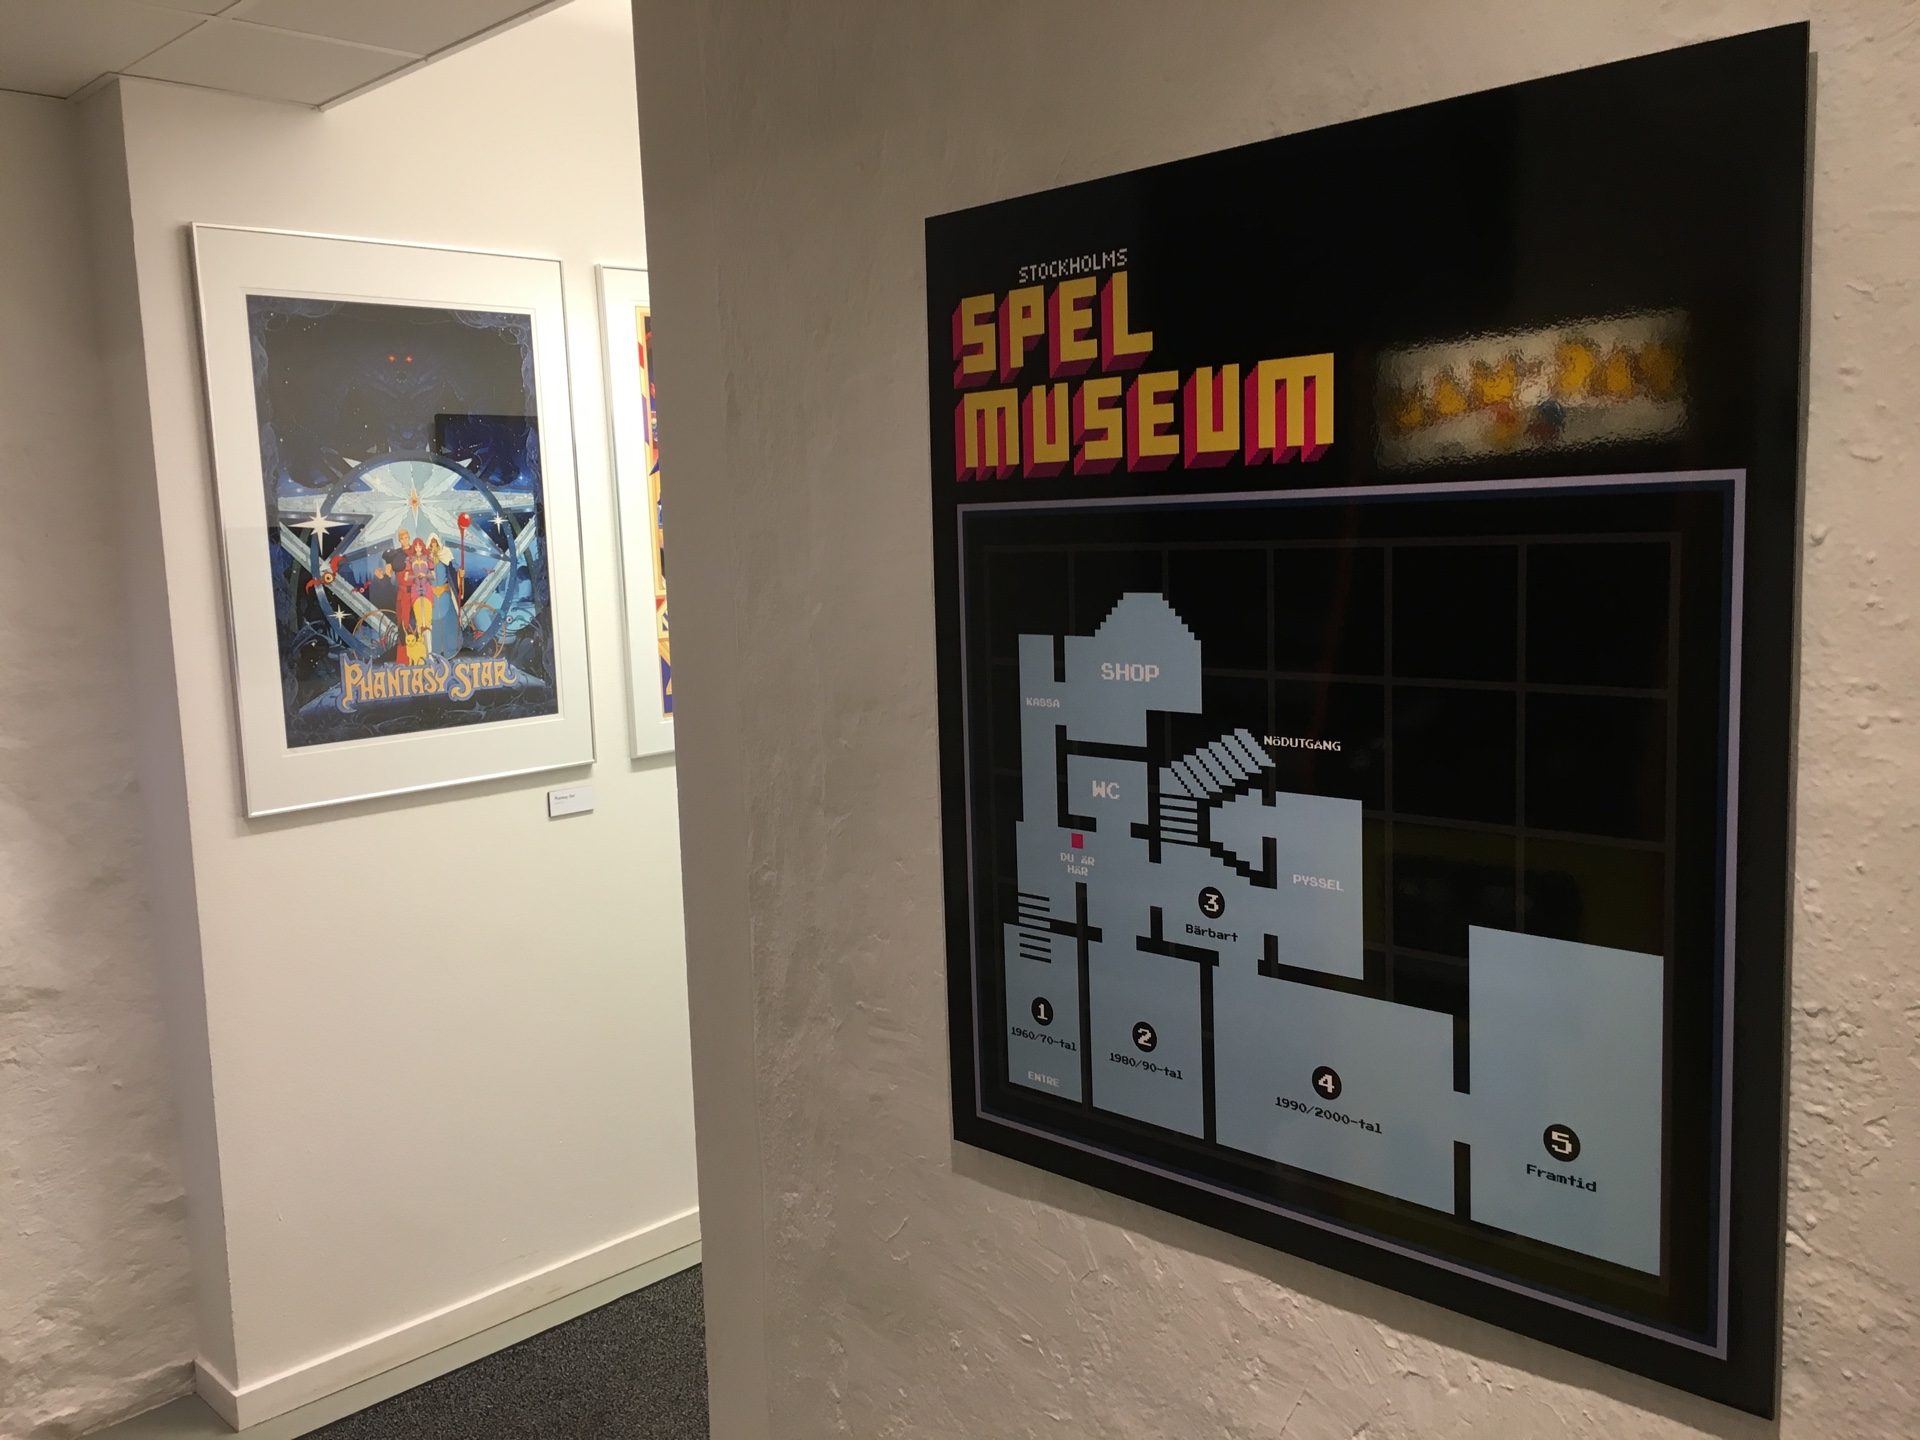 stockholms spelmuseum intro 1